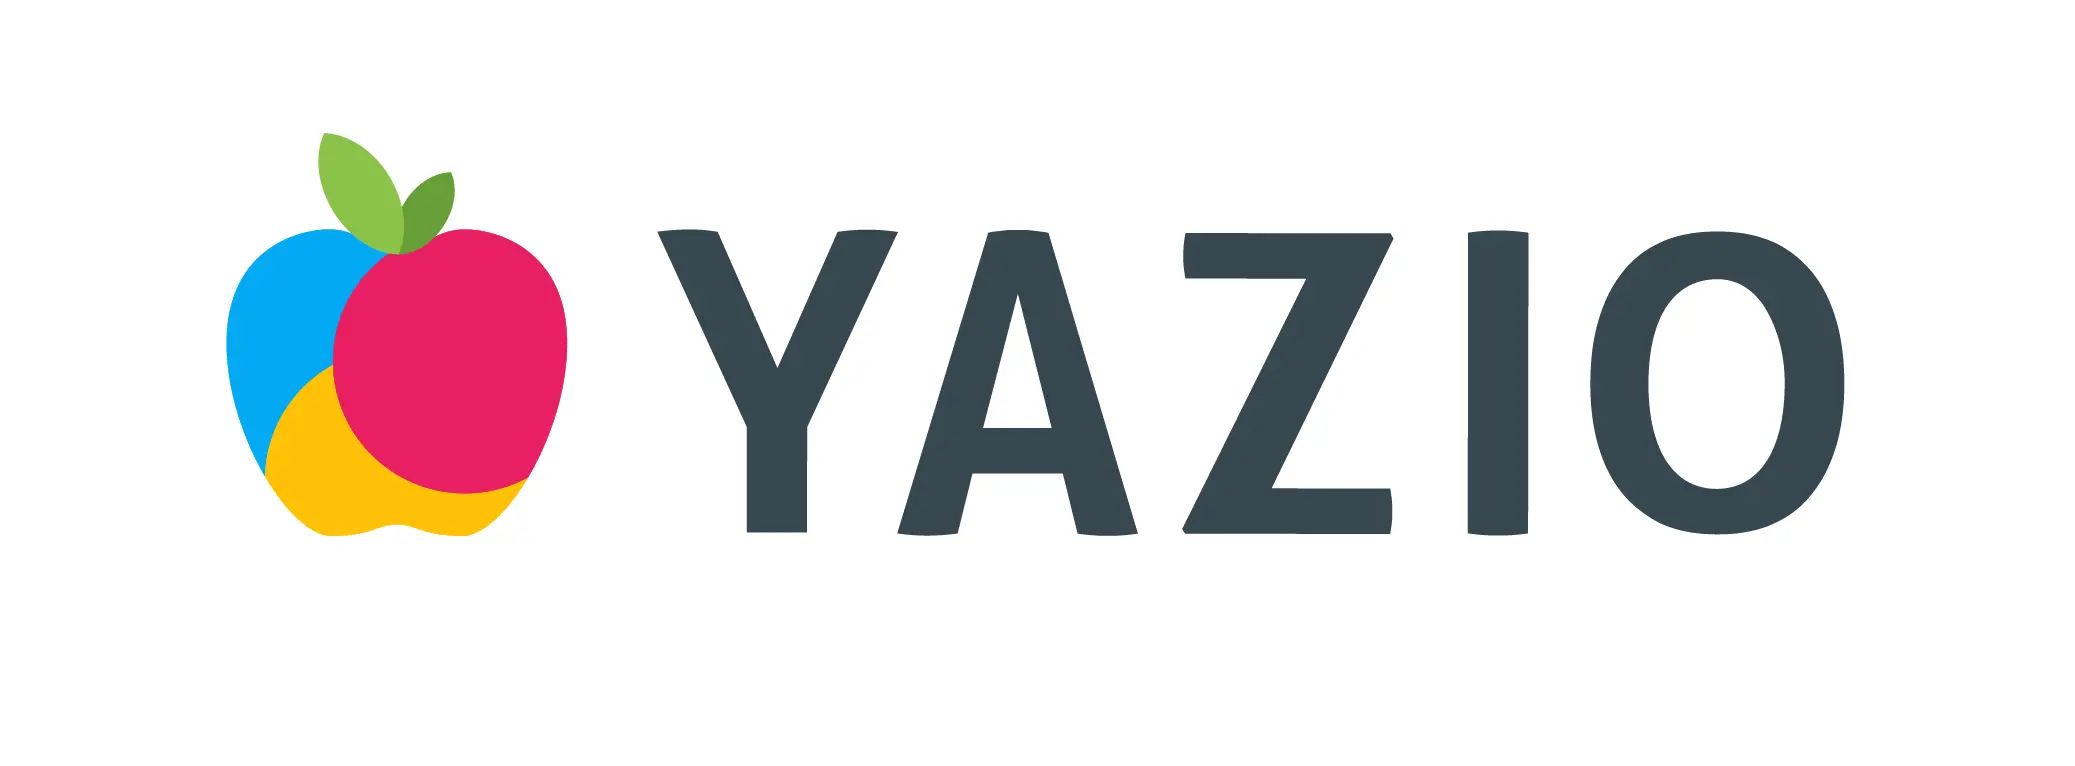 YAZIO GmbH